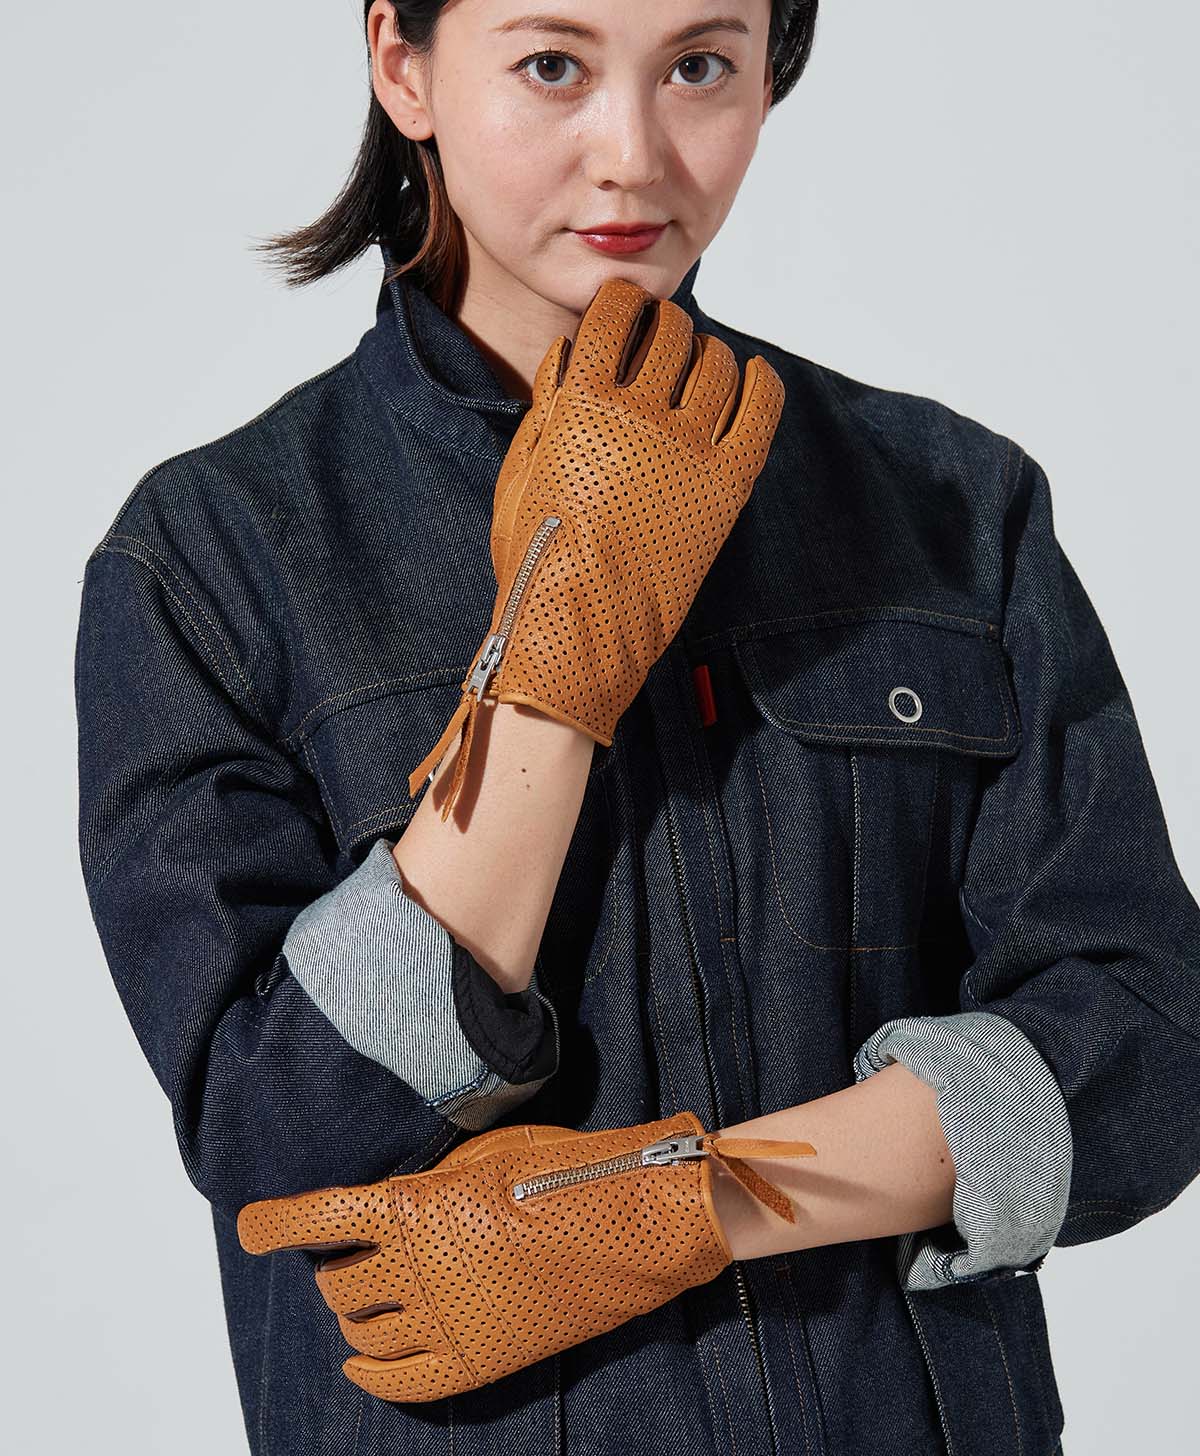 Rox Glove -pl / Brown (feminino)